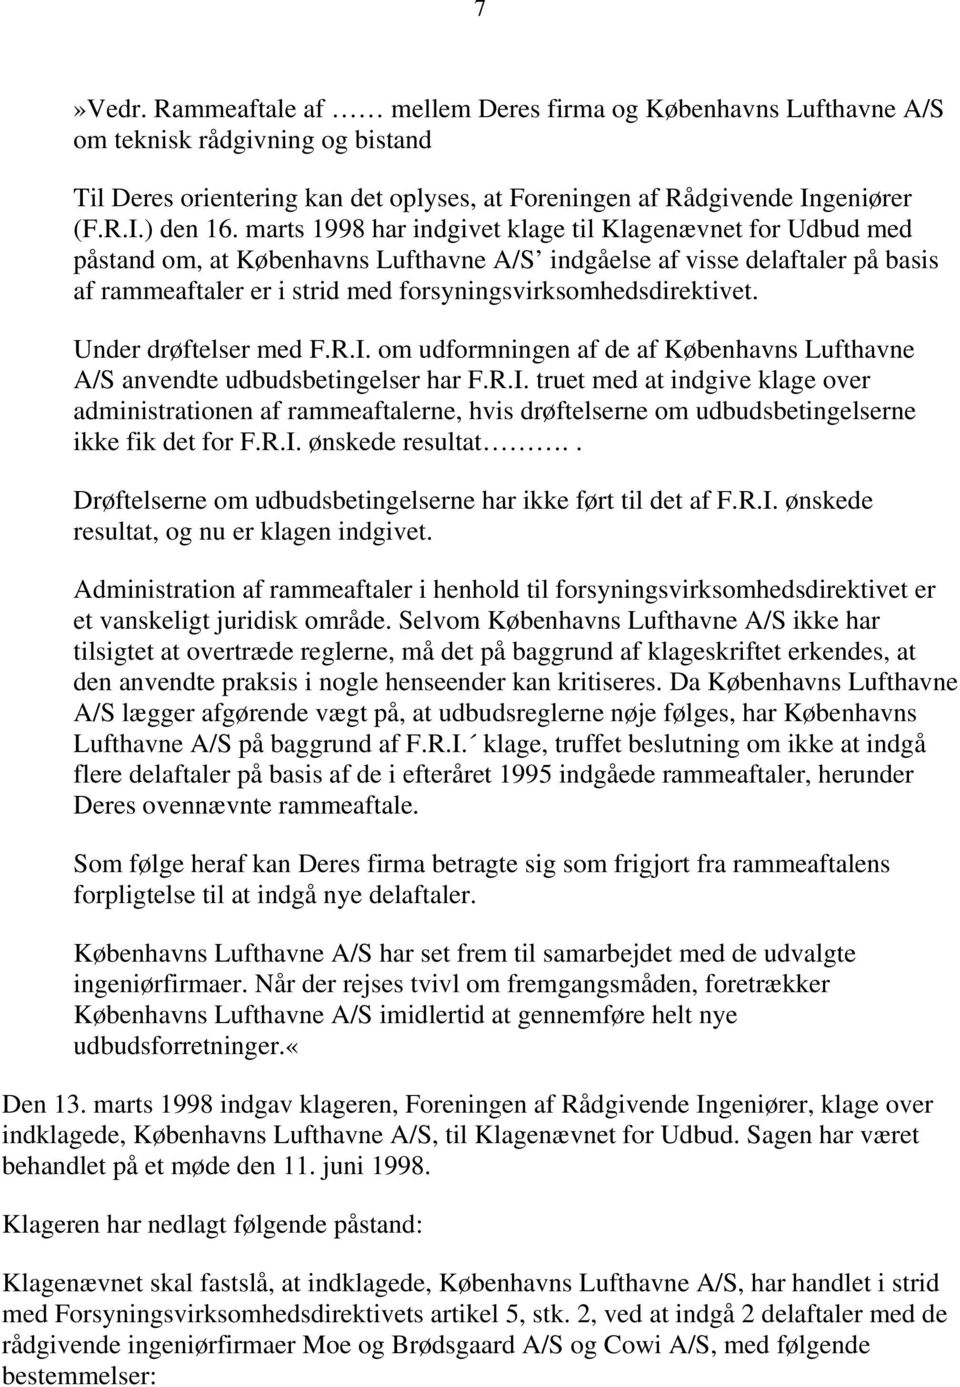 forsyningsvirksomhedsdirektivet. Under drøftelser med F.R.I. om udformningen af de af Københavns Lufthavne A/S anvendte udbudsbetingelser har F.R.I. truet med at indgive klage over administrationen af rammeaftalerne, hvis drøftelserne om udbudsbetingelserne ikke fik det for F.